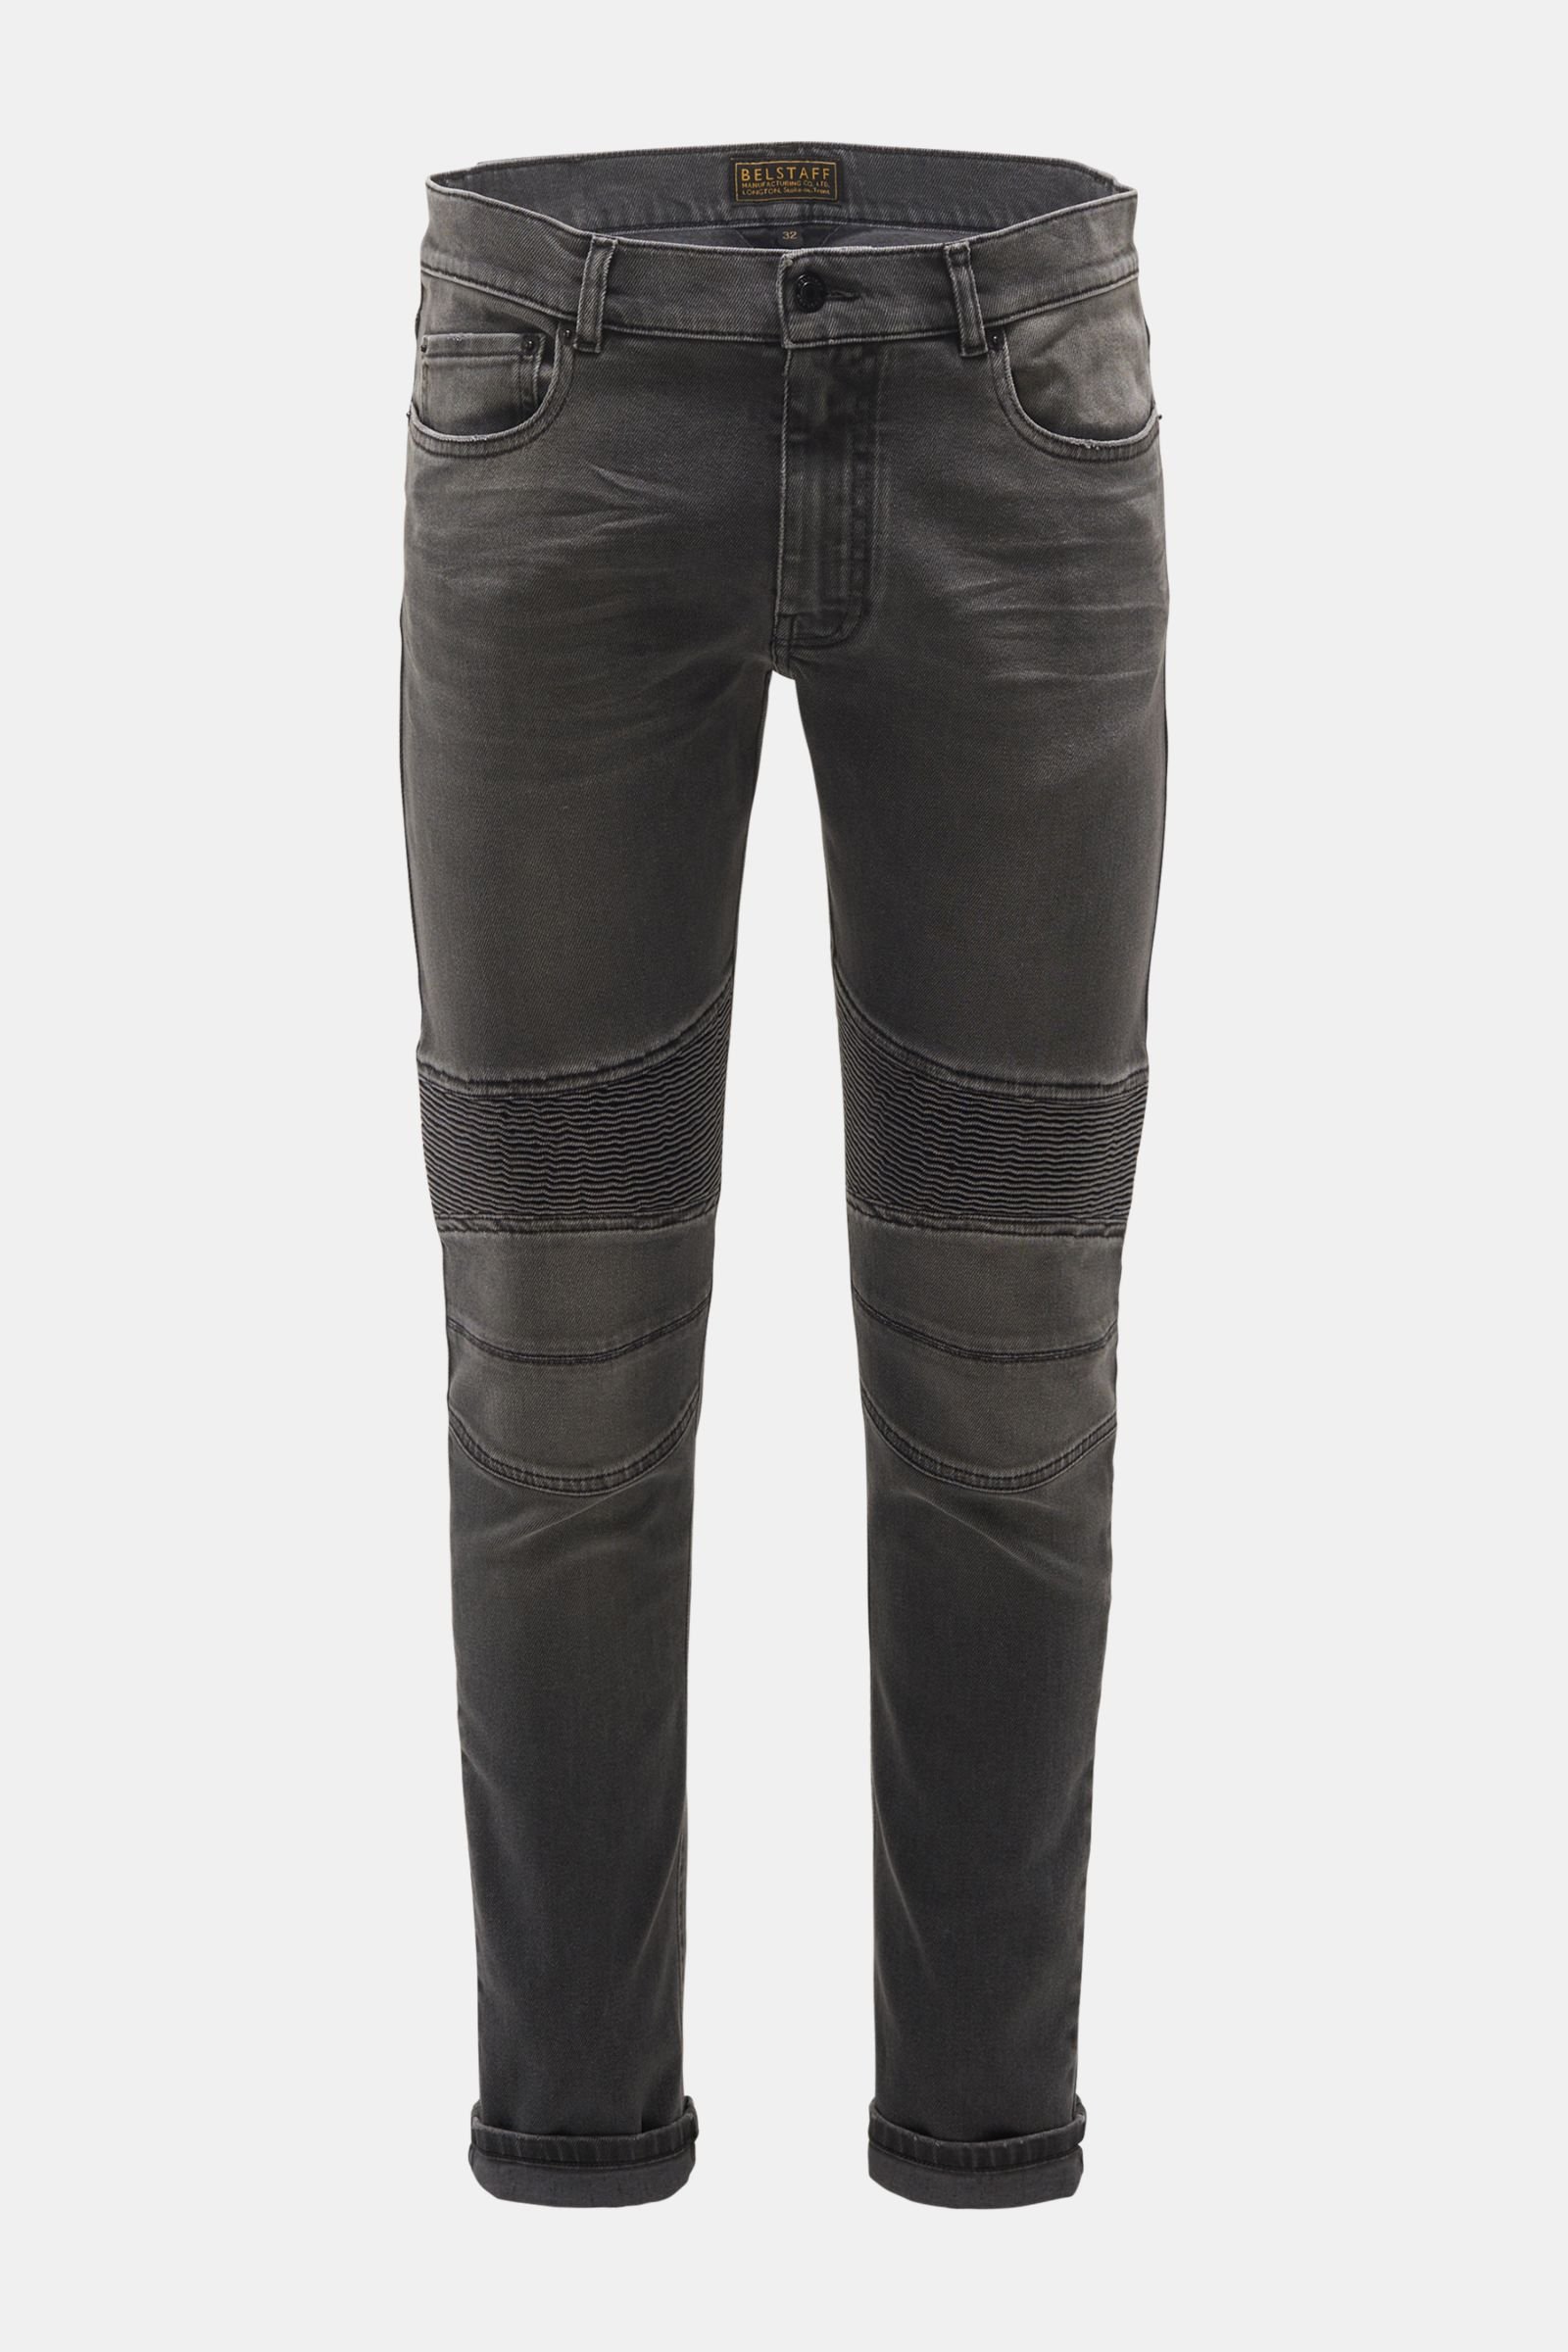 BELSTAFF jeans dark grey | BRAUN Hamburg